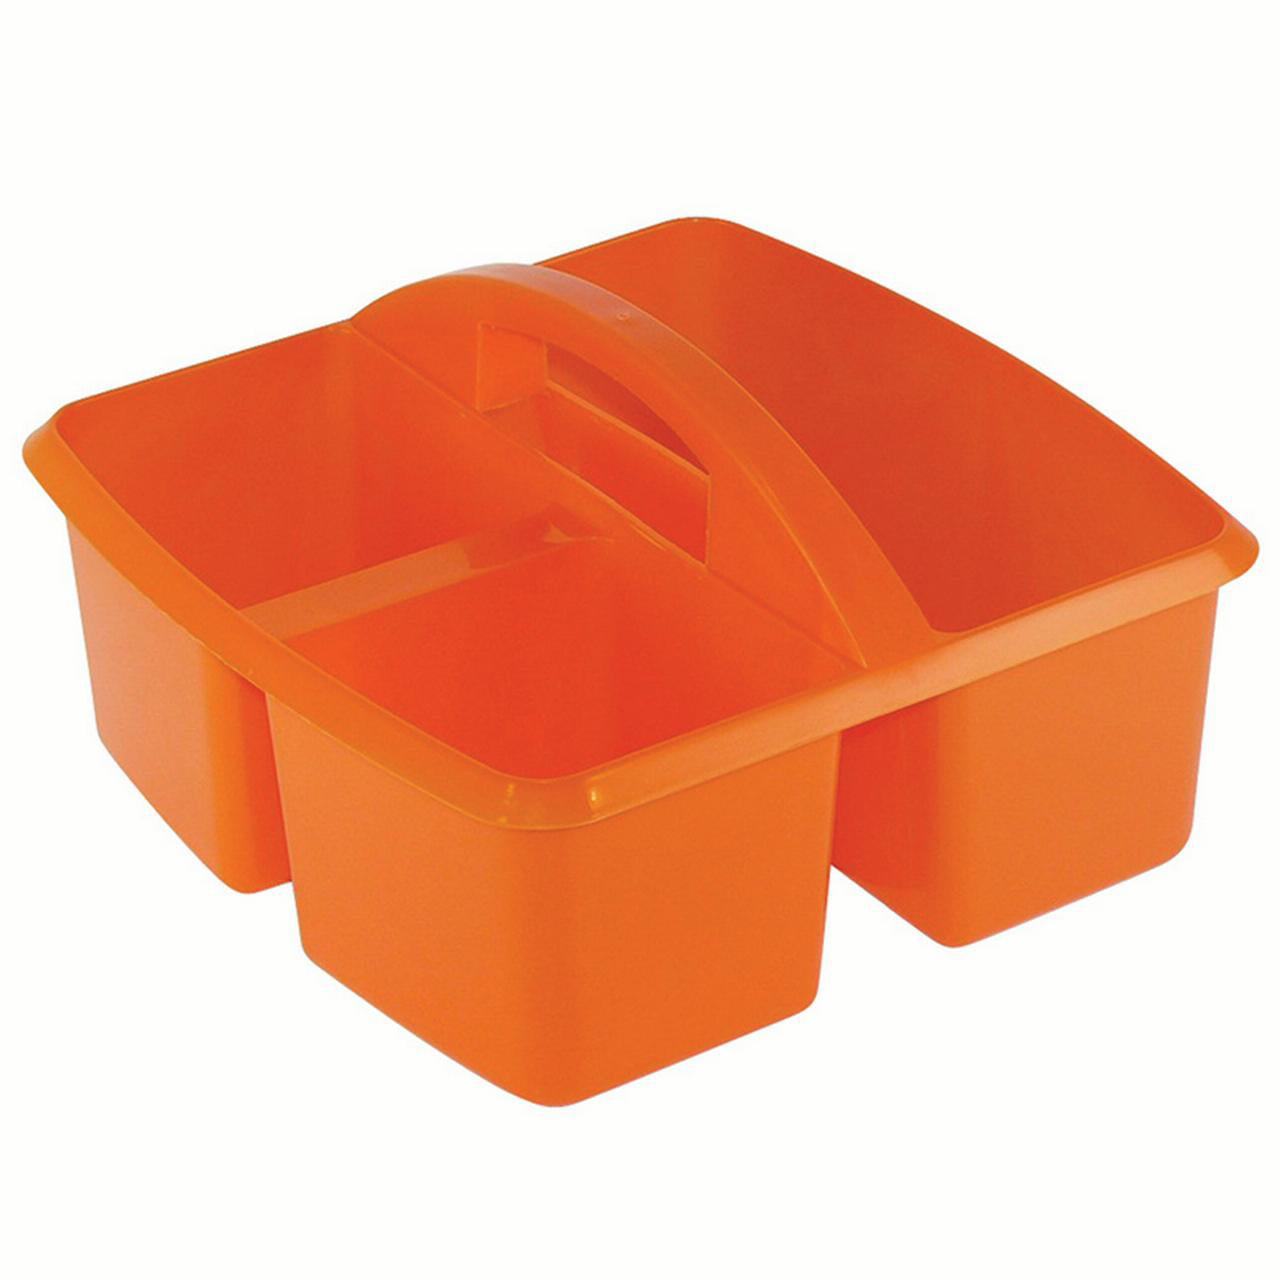 Small Utility Caddy, Orange | Bundle of 5 Each - Walmart.com